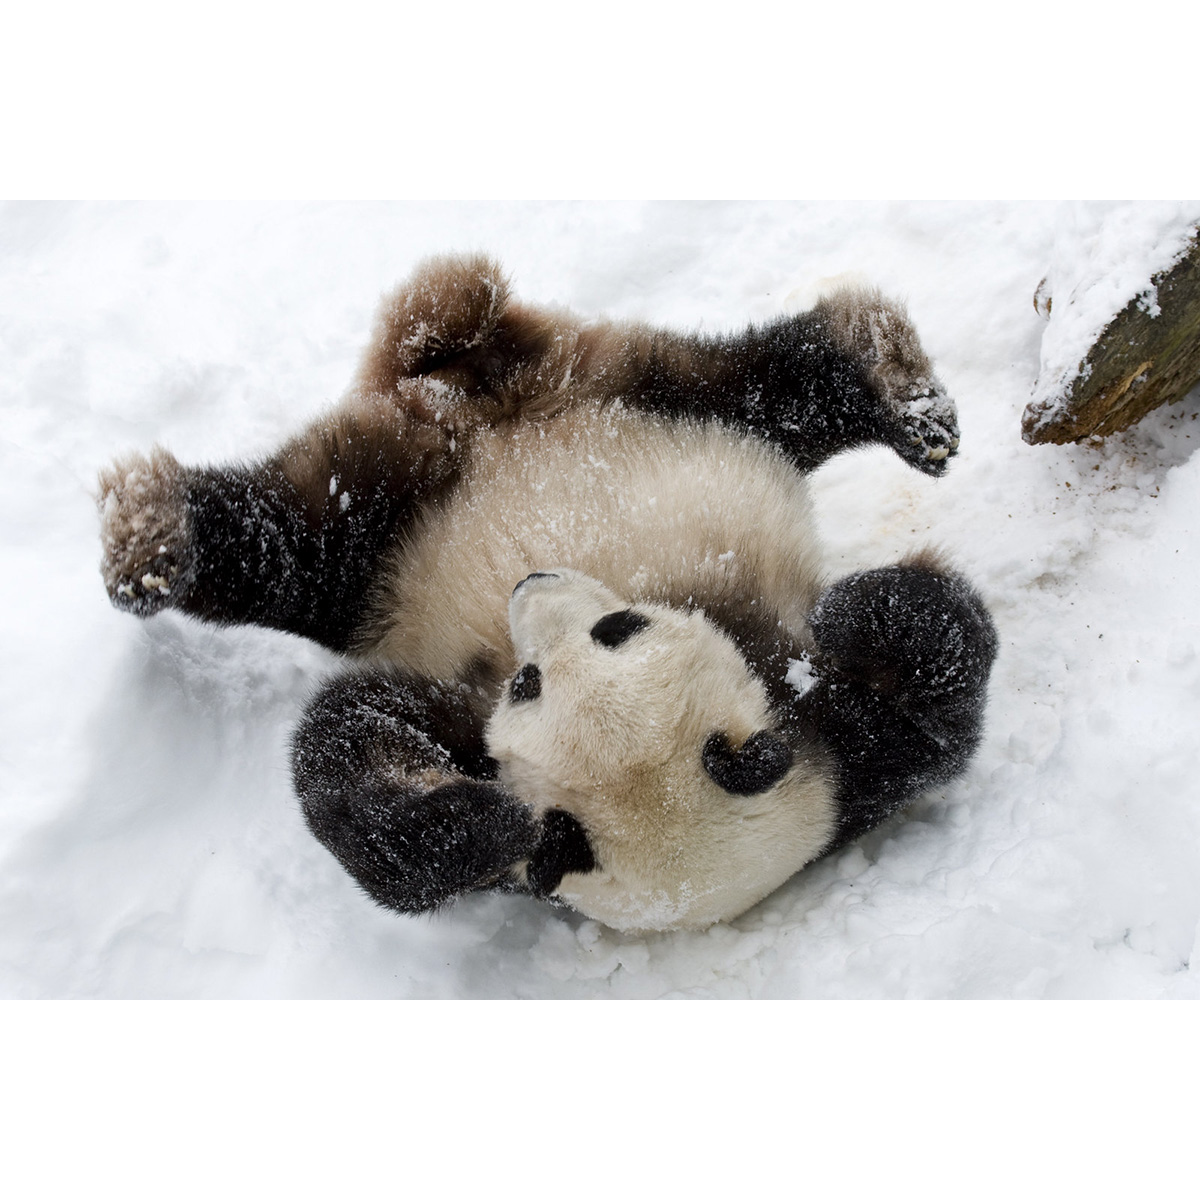 Большая панда (Ailuropoda melanoleuca) Фото №6